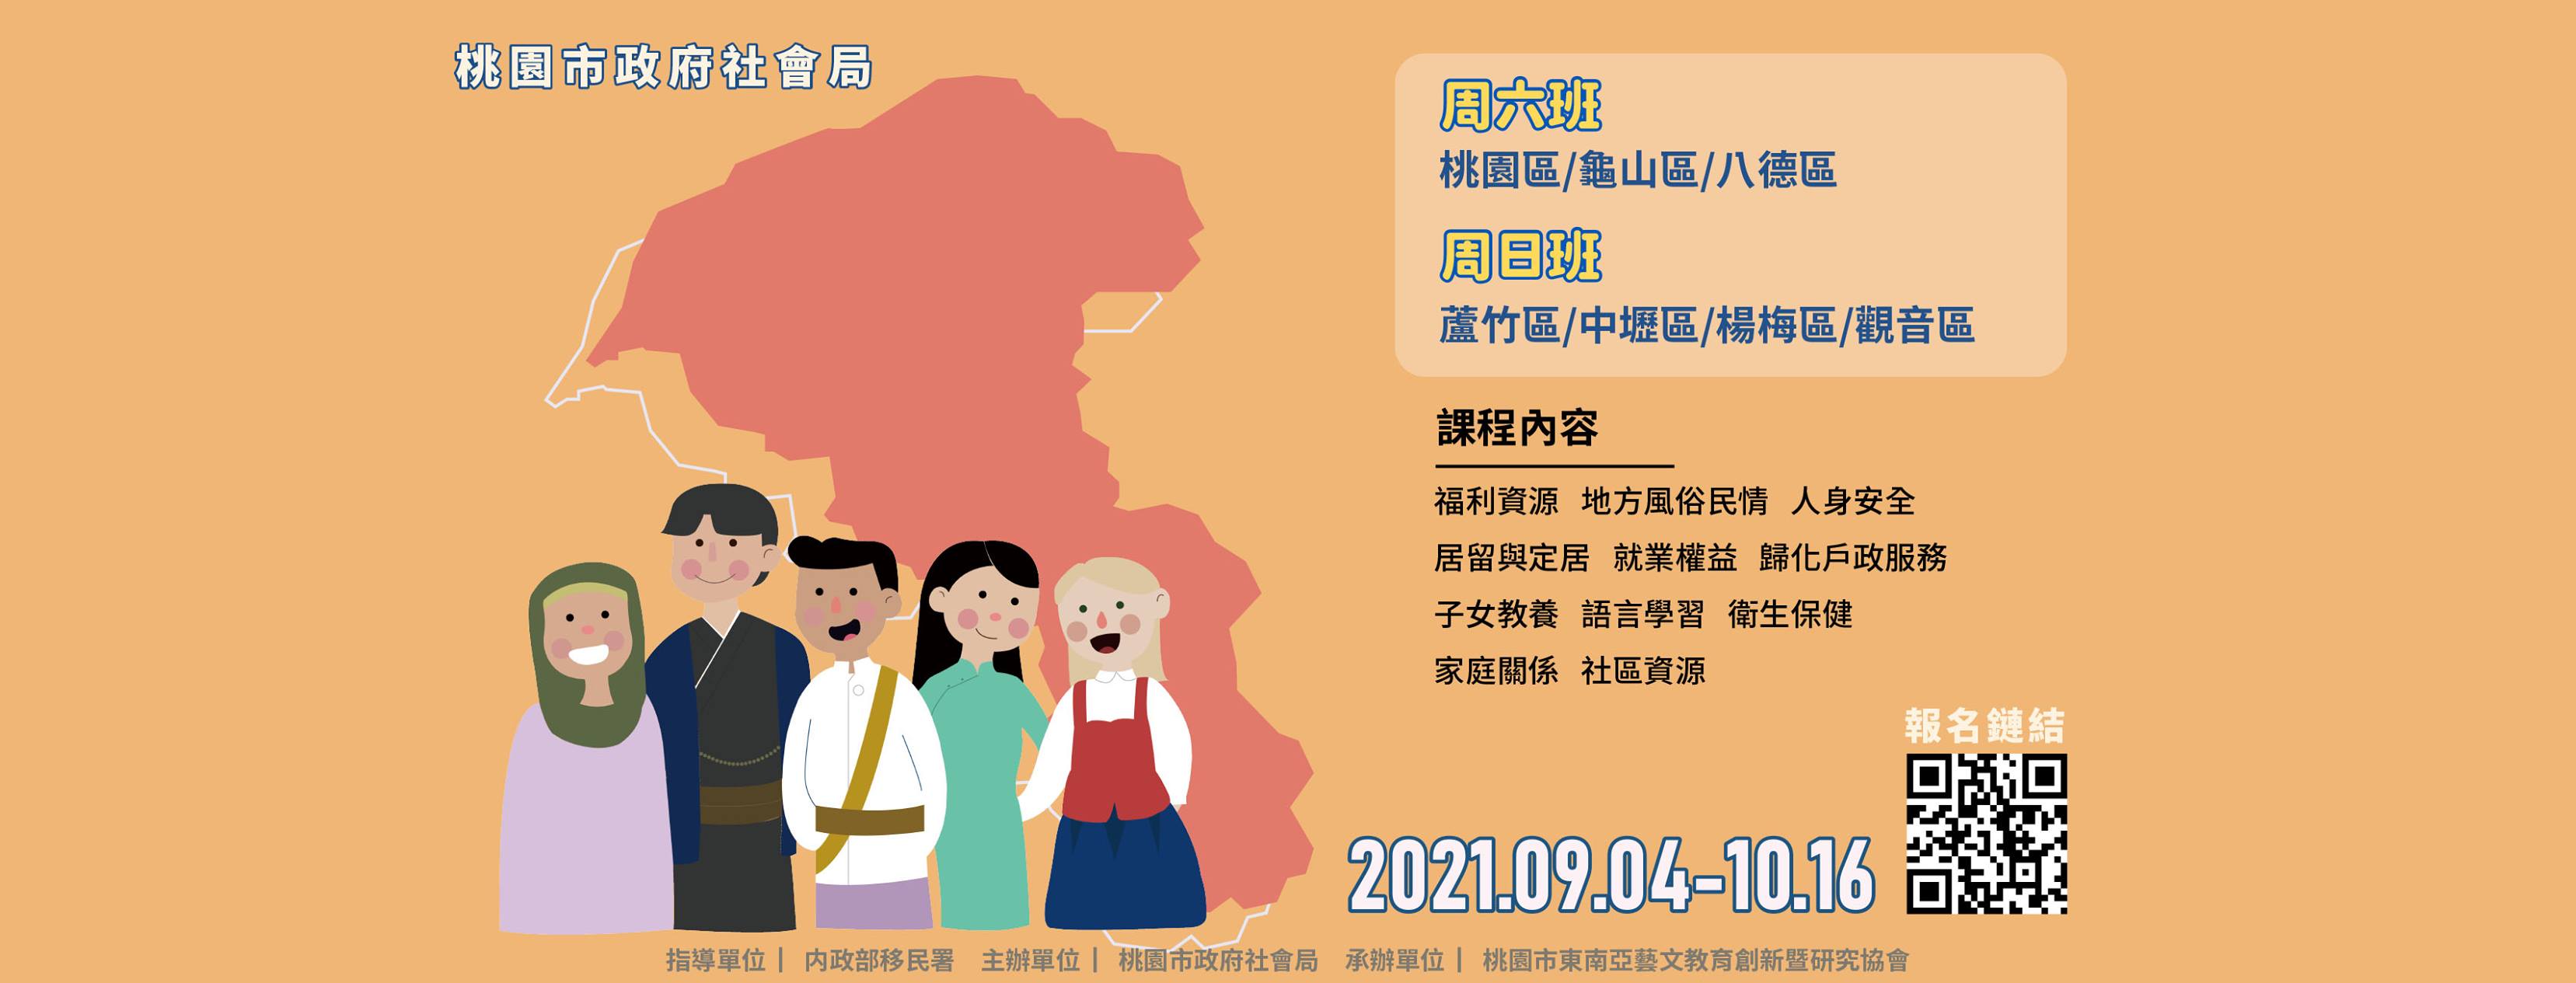 Kursus dibuka di tujuh distrik di Kota Taoyuan. Sumber: Diambil dari Biro Sosial Taoyuan